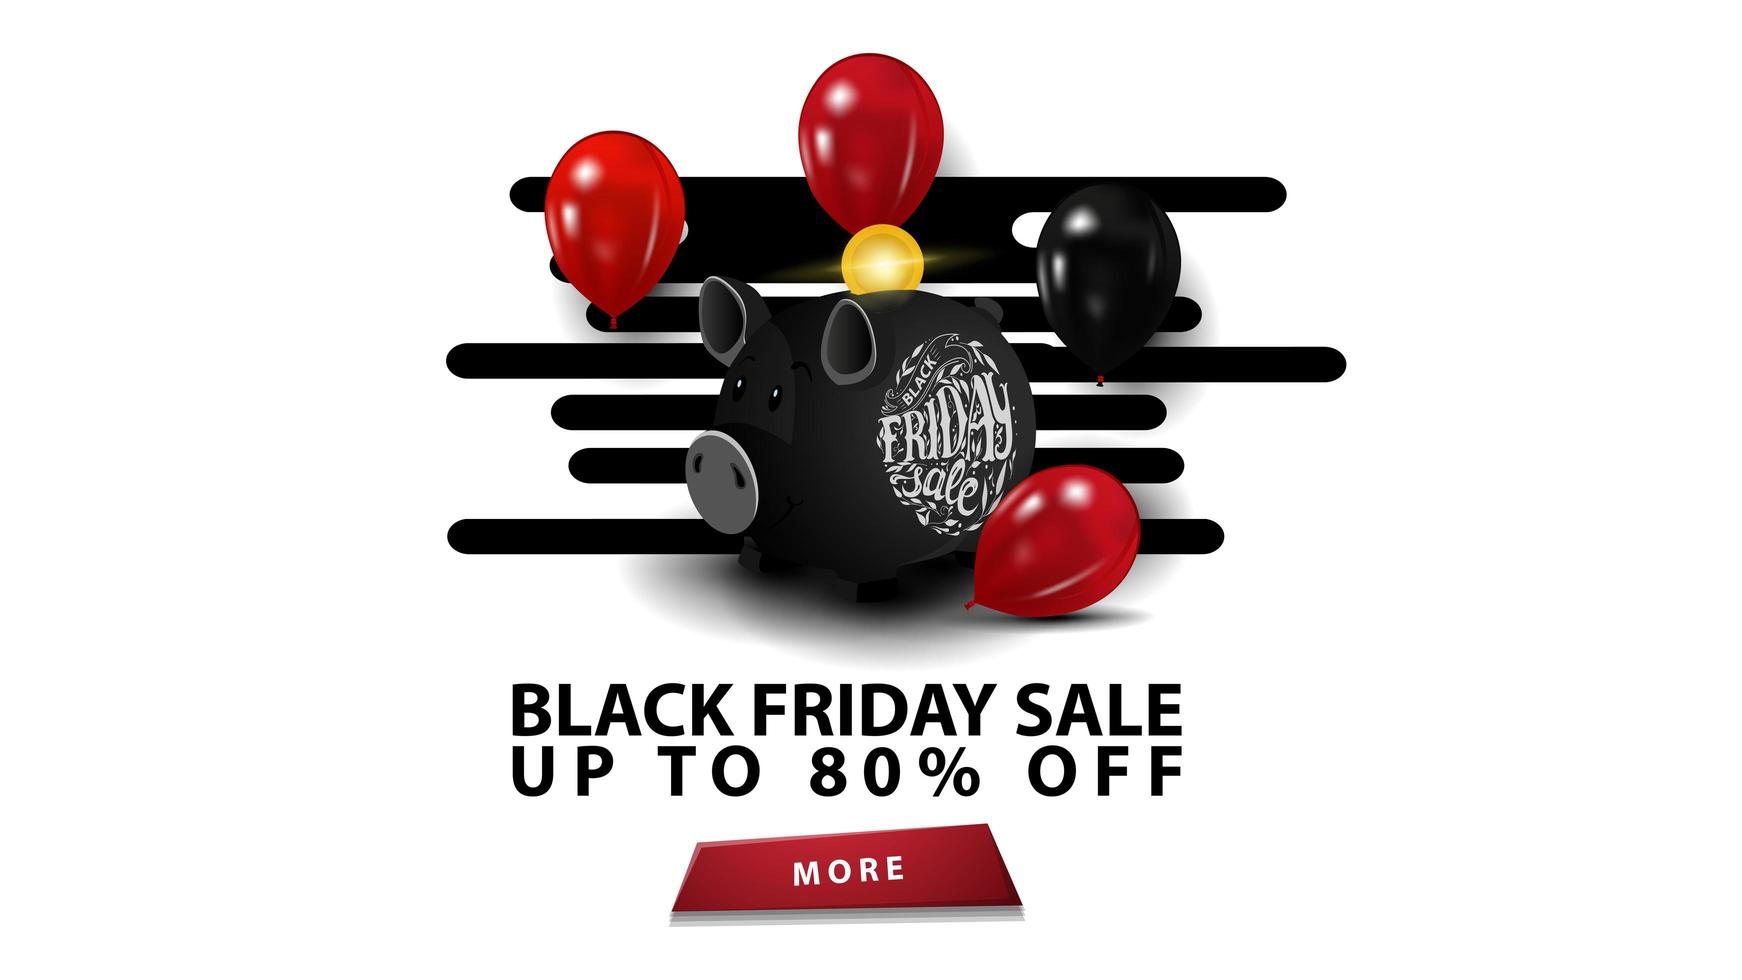 venda de sexta-feira negra, até 80 de desconto, modelo preto criativo em estilo minimalista moderno com cofrinho e balões. vetor